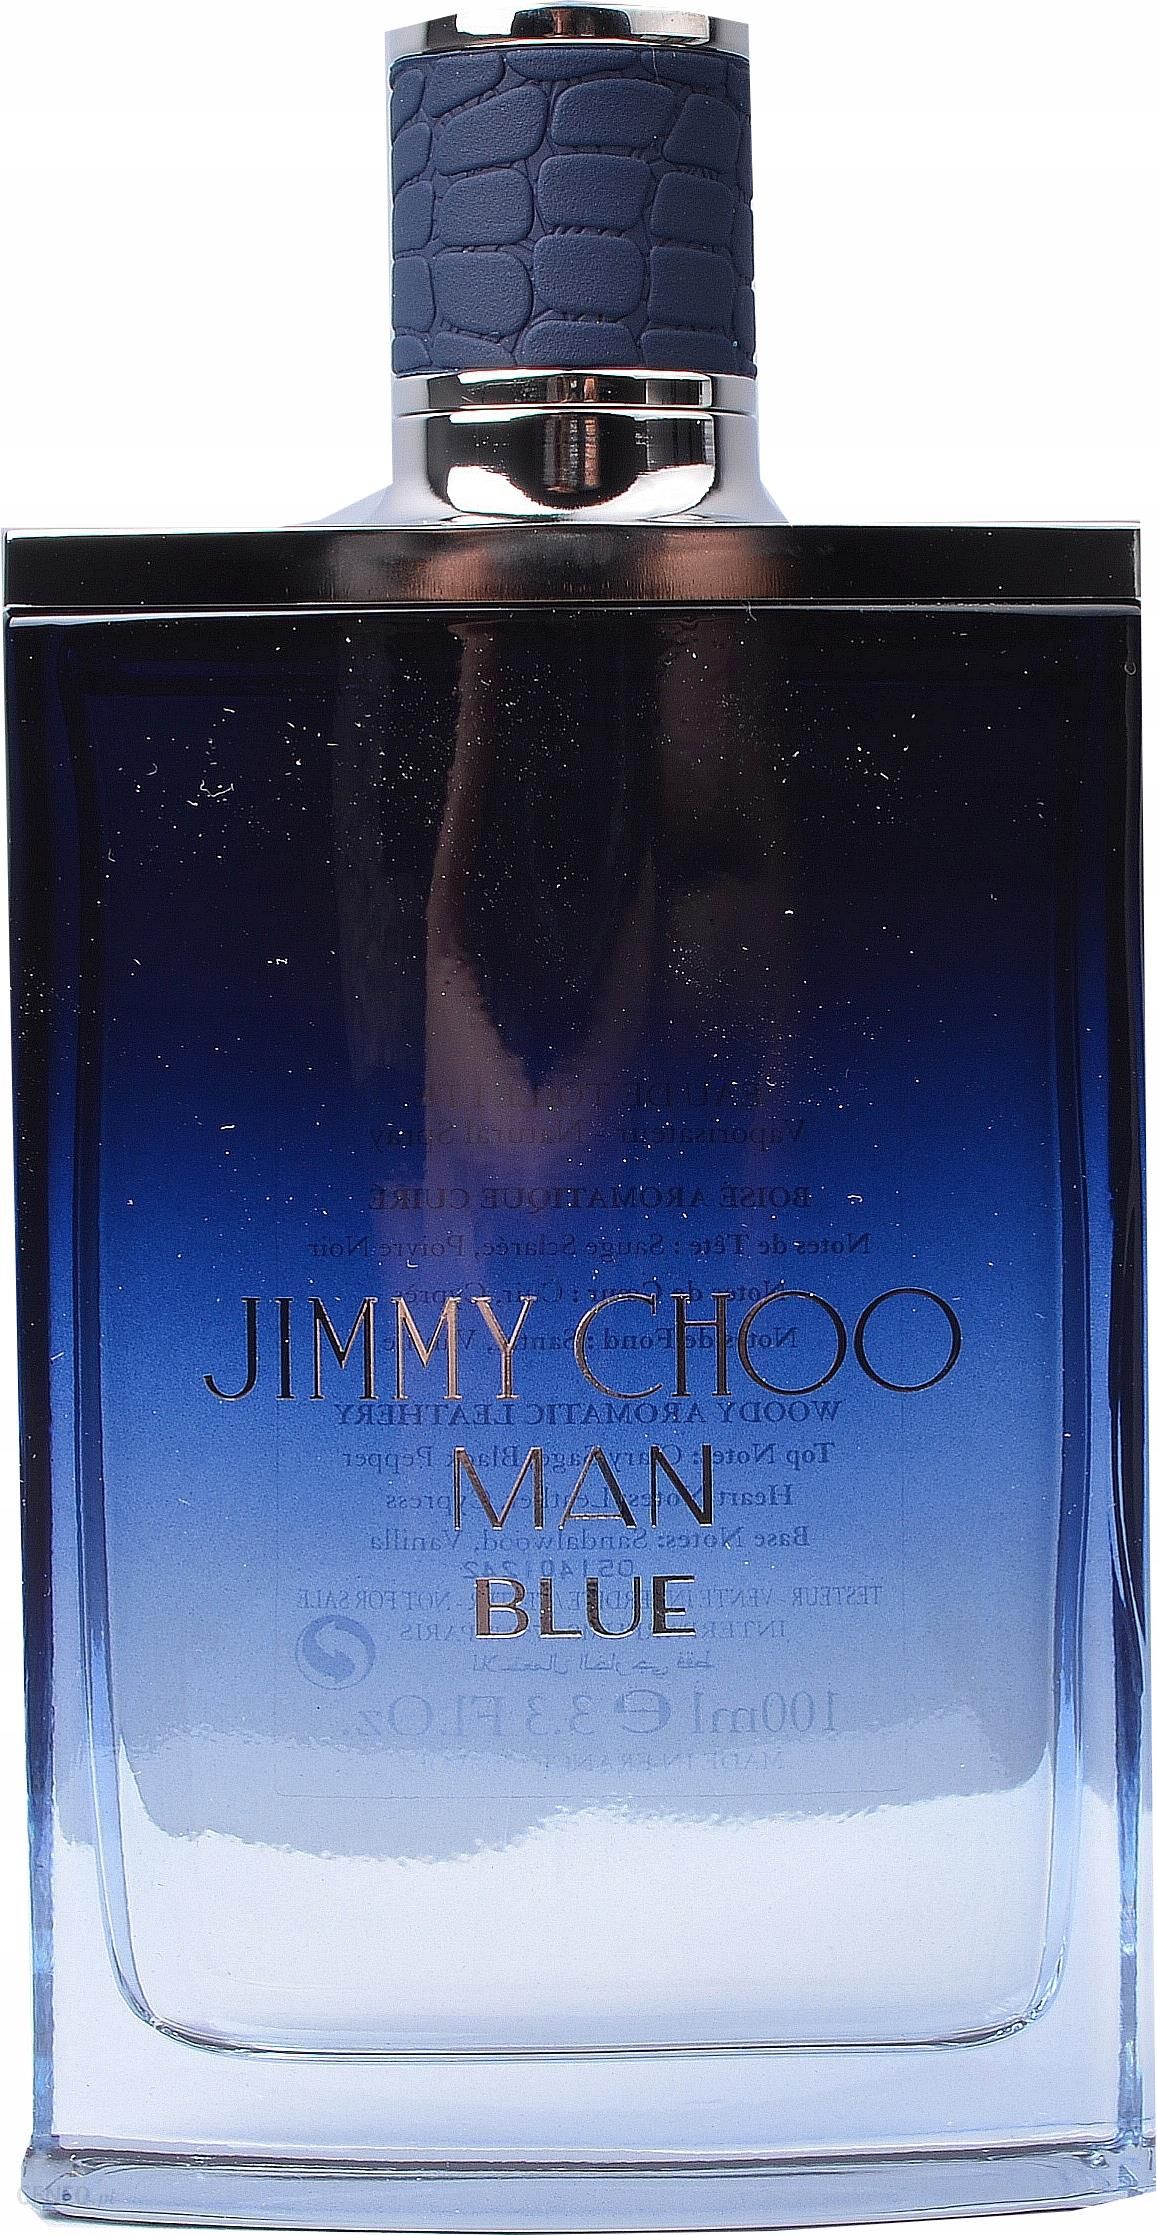 Jimmy Choo Jimmy Choo Man Blue Woda Toaletowa 100 ml